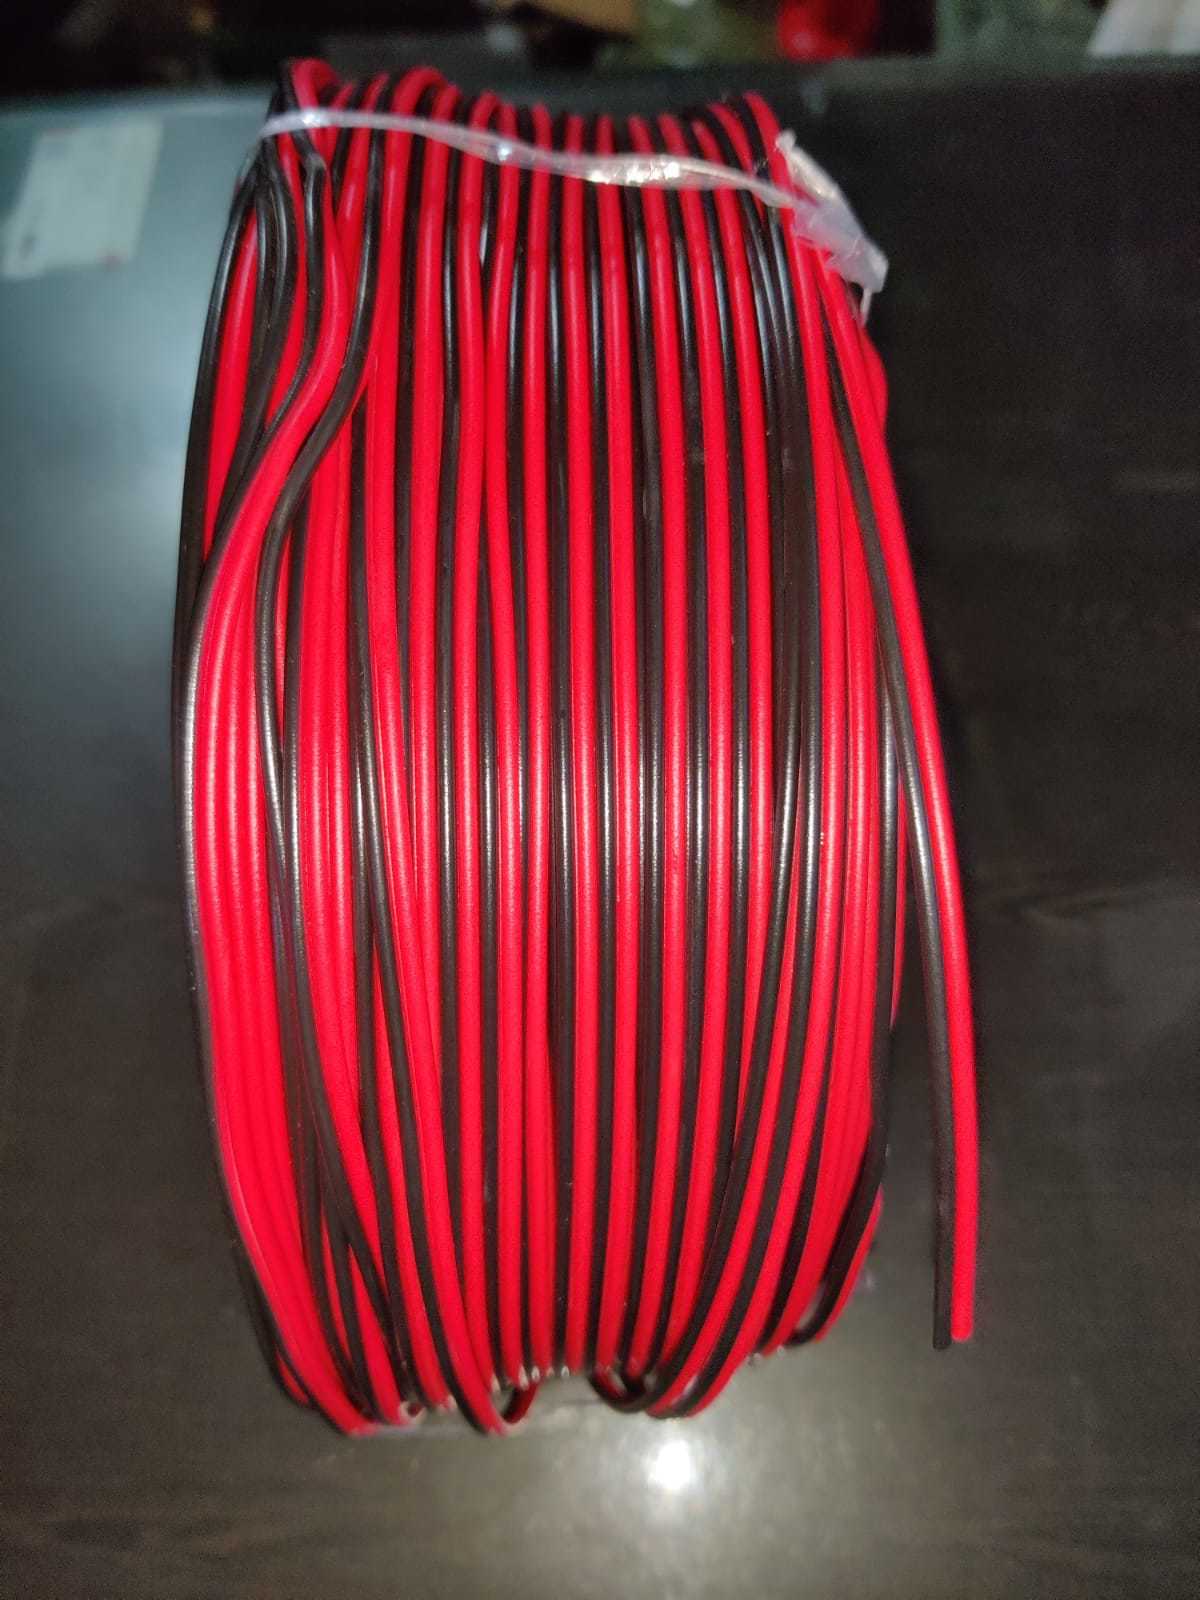 Speaker Wire Red Black